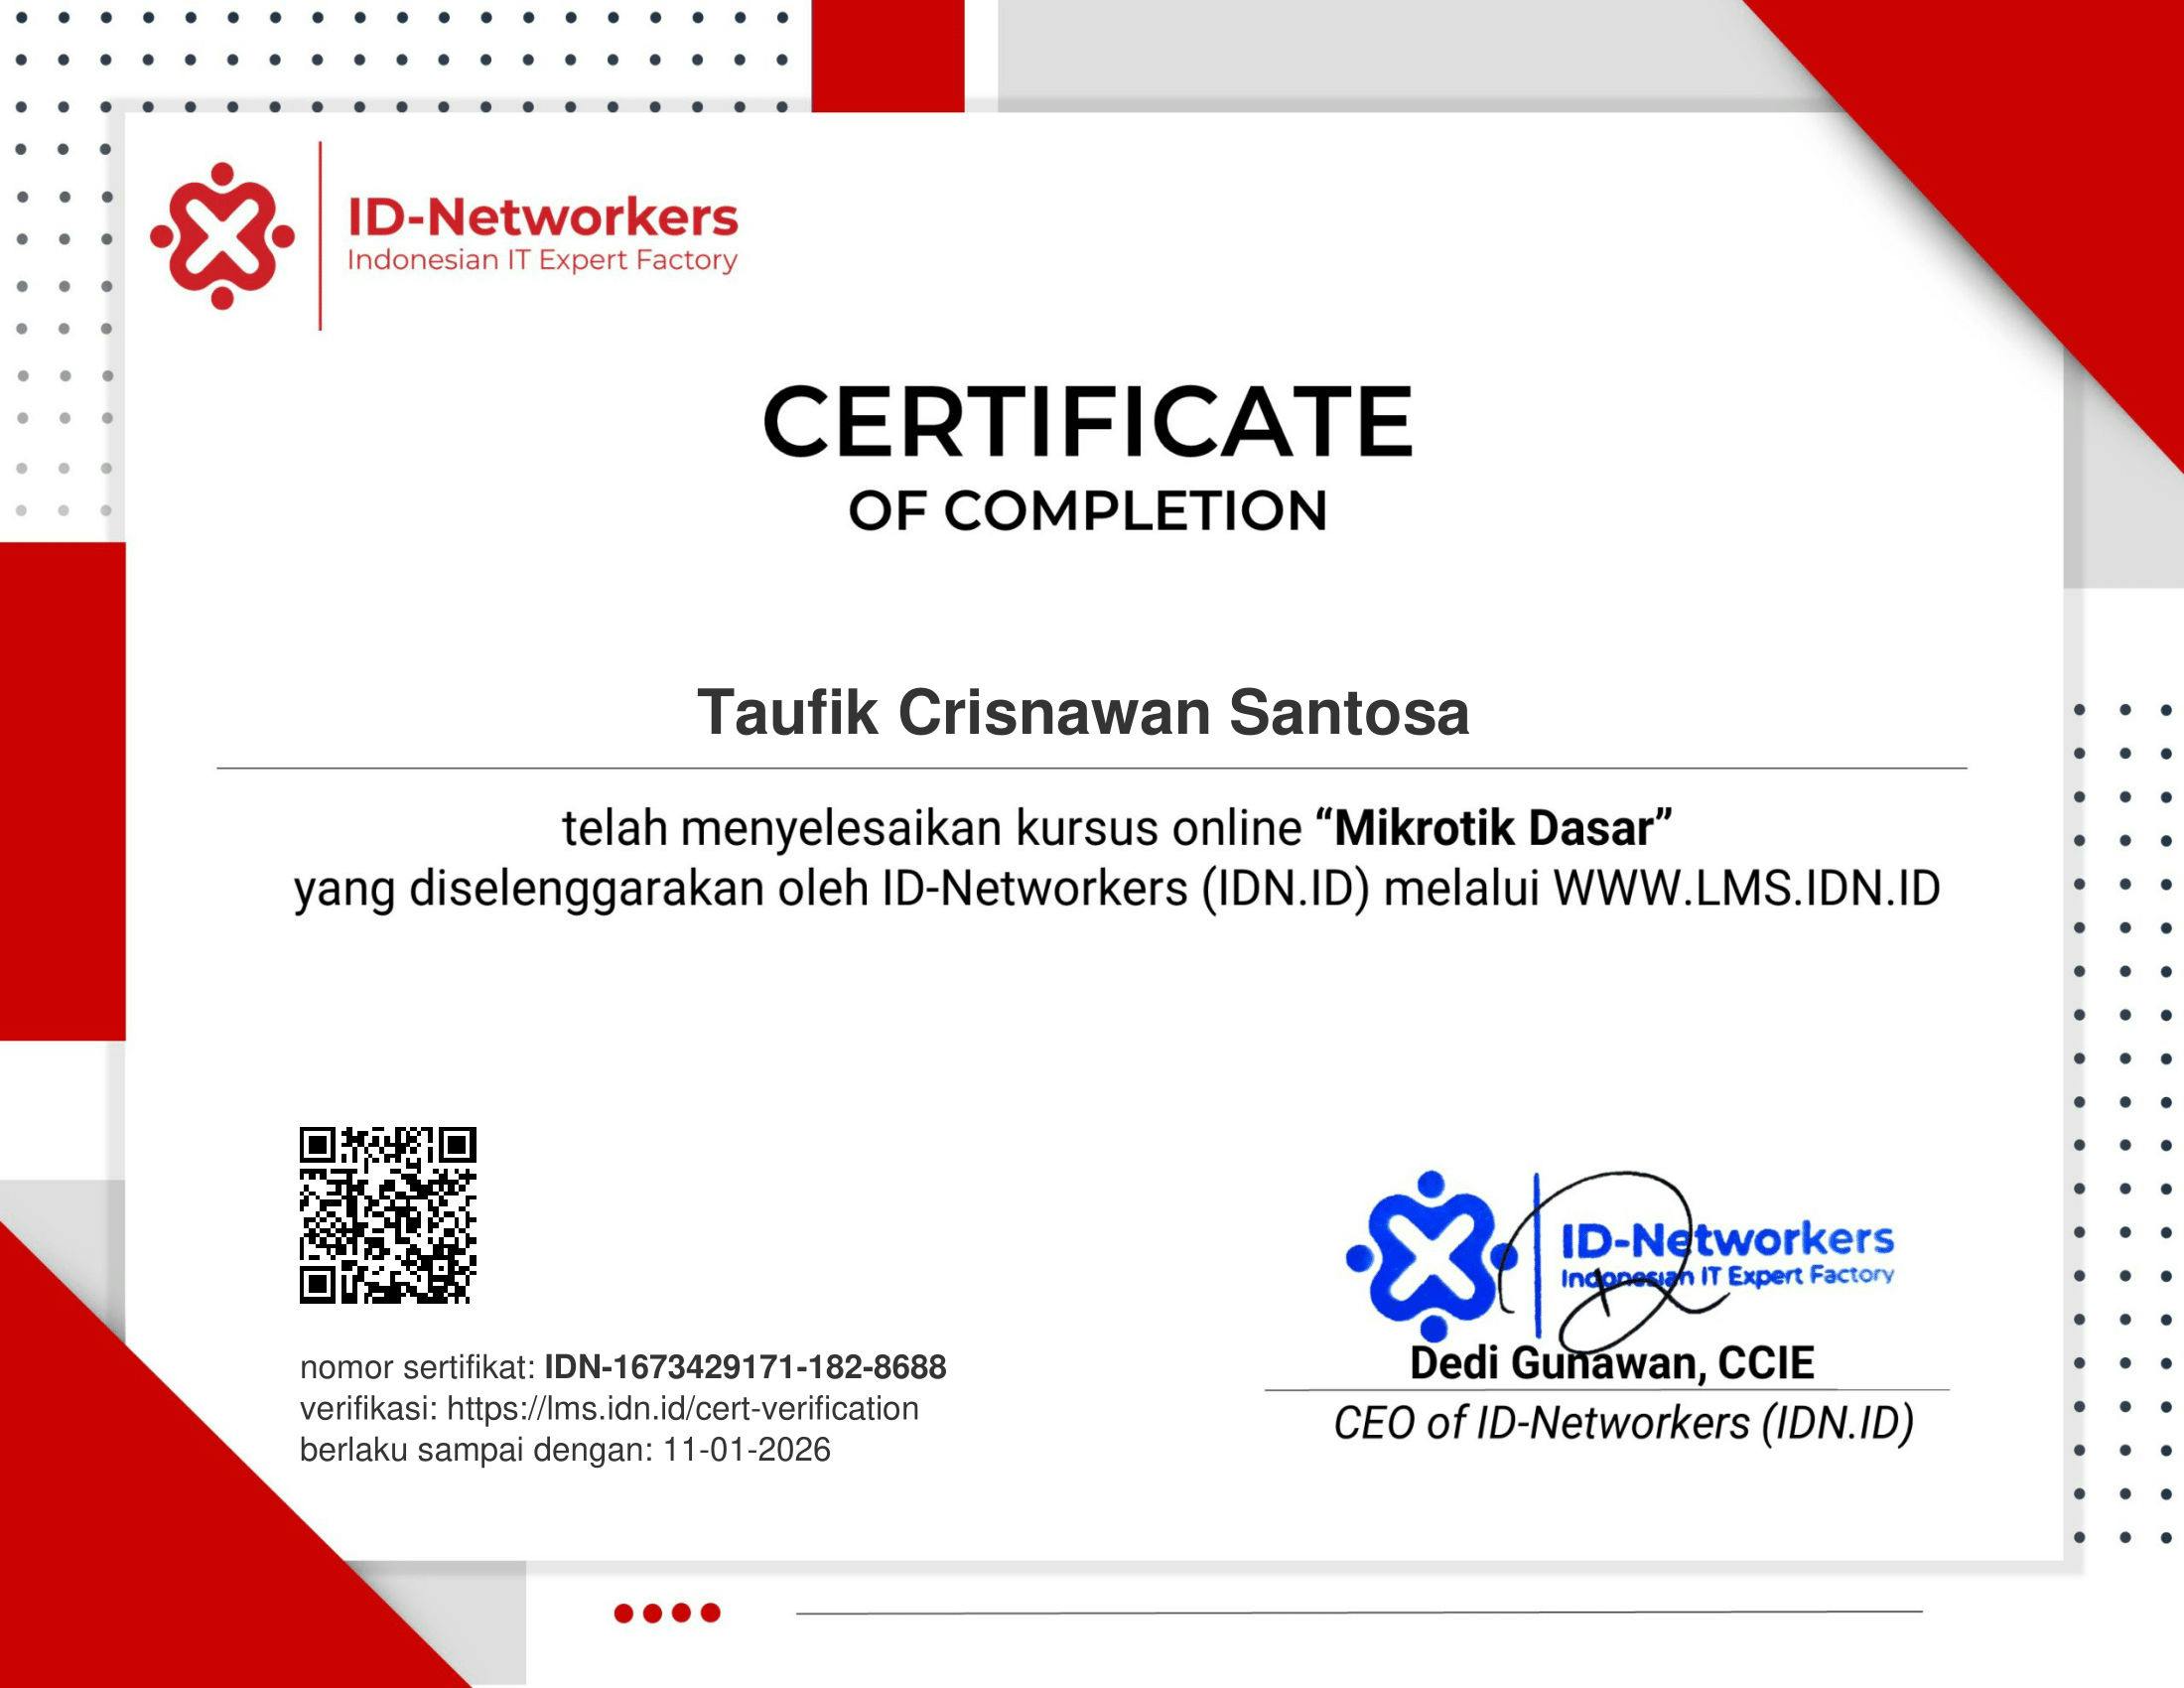 Mikrotik Dasar - ID Networkers certificate